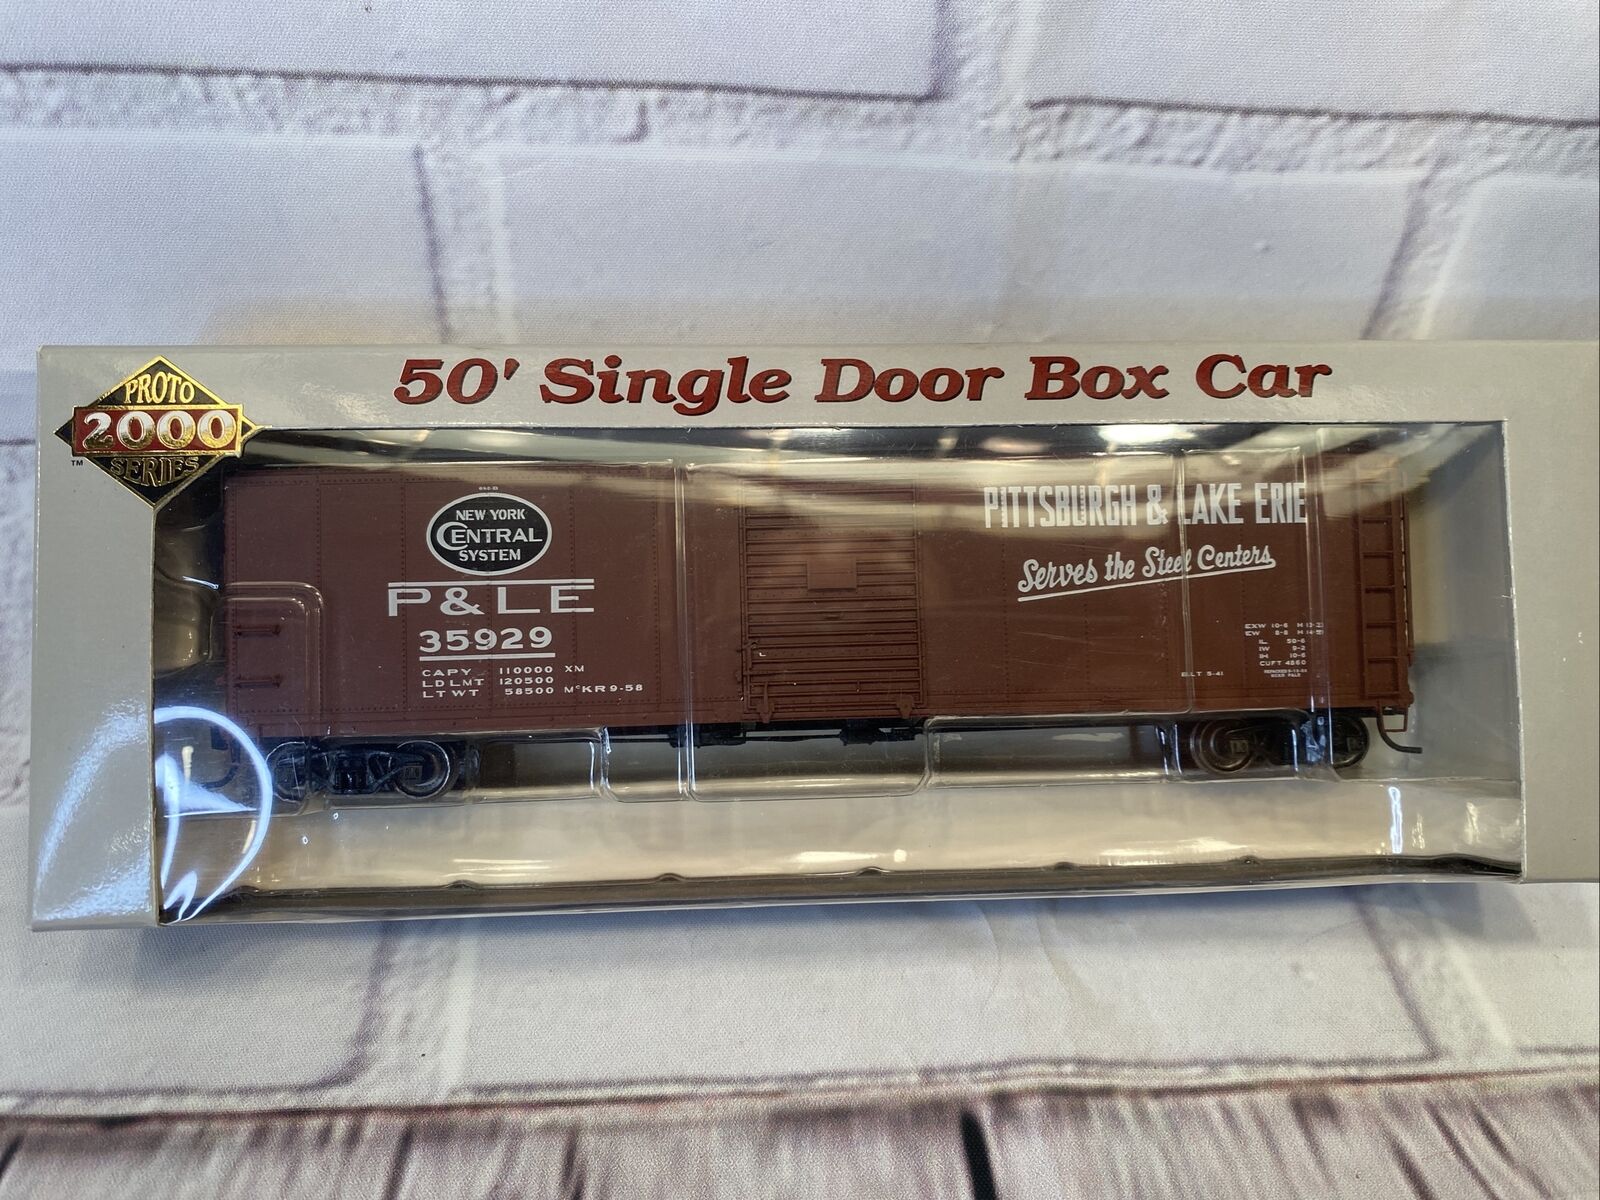 HO Proto 2000 23353 P&LE Pittsburgh & Lake Erie 50' Single Door Box Car #35929